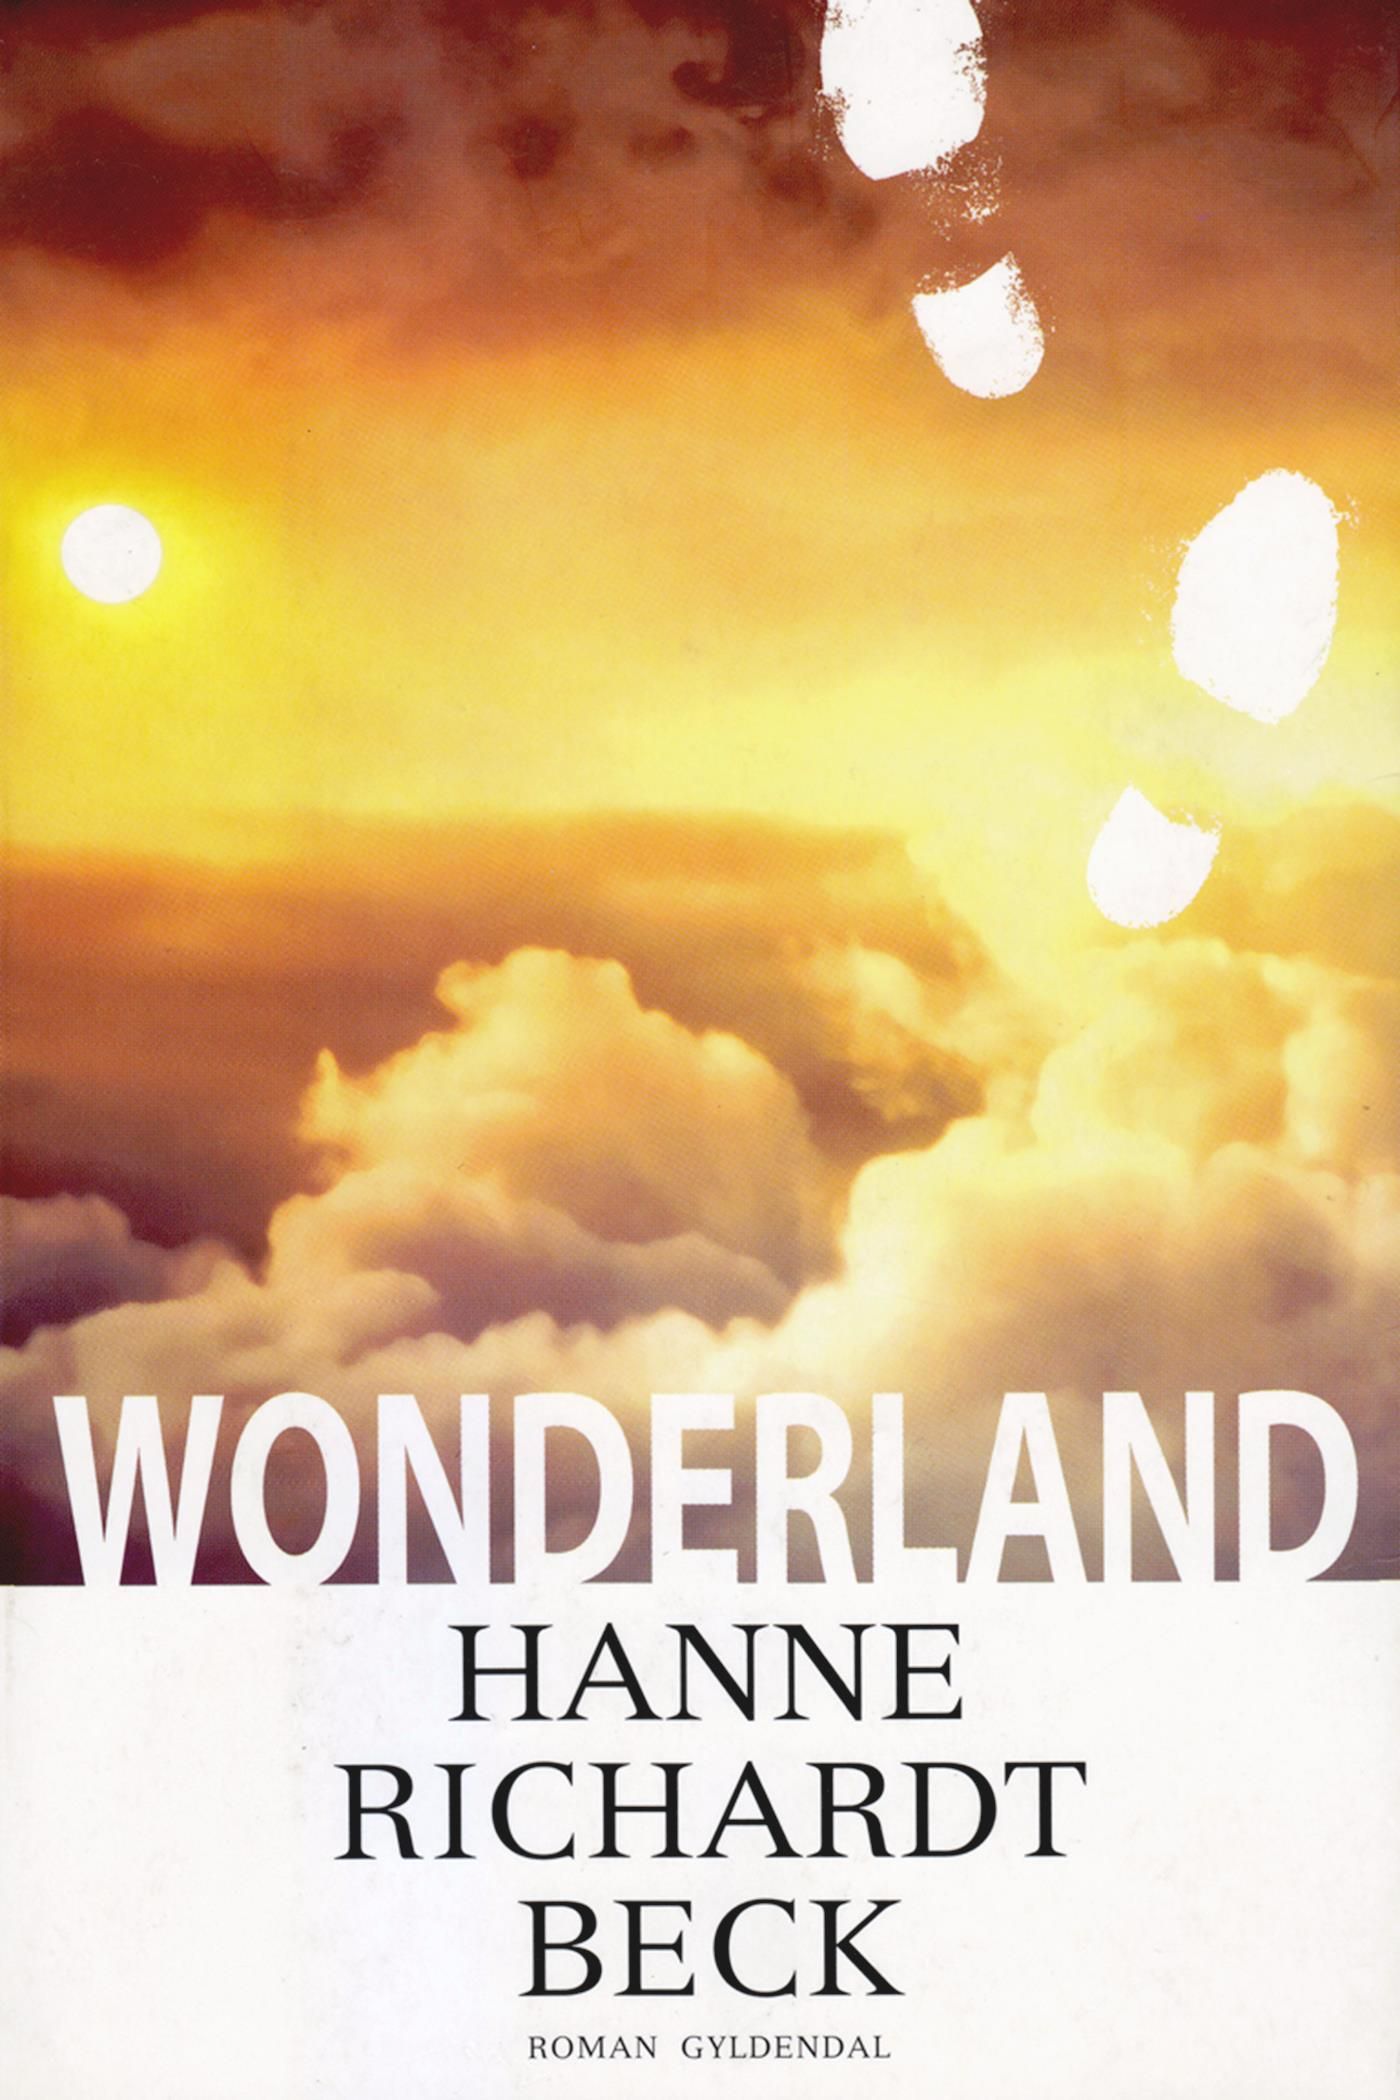 Wonderland, e-bog af Hanne Richardt Beck